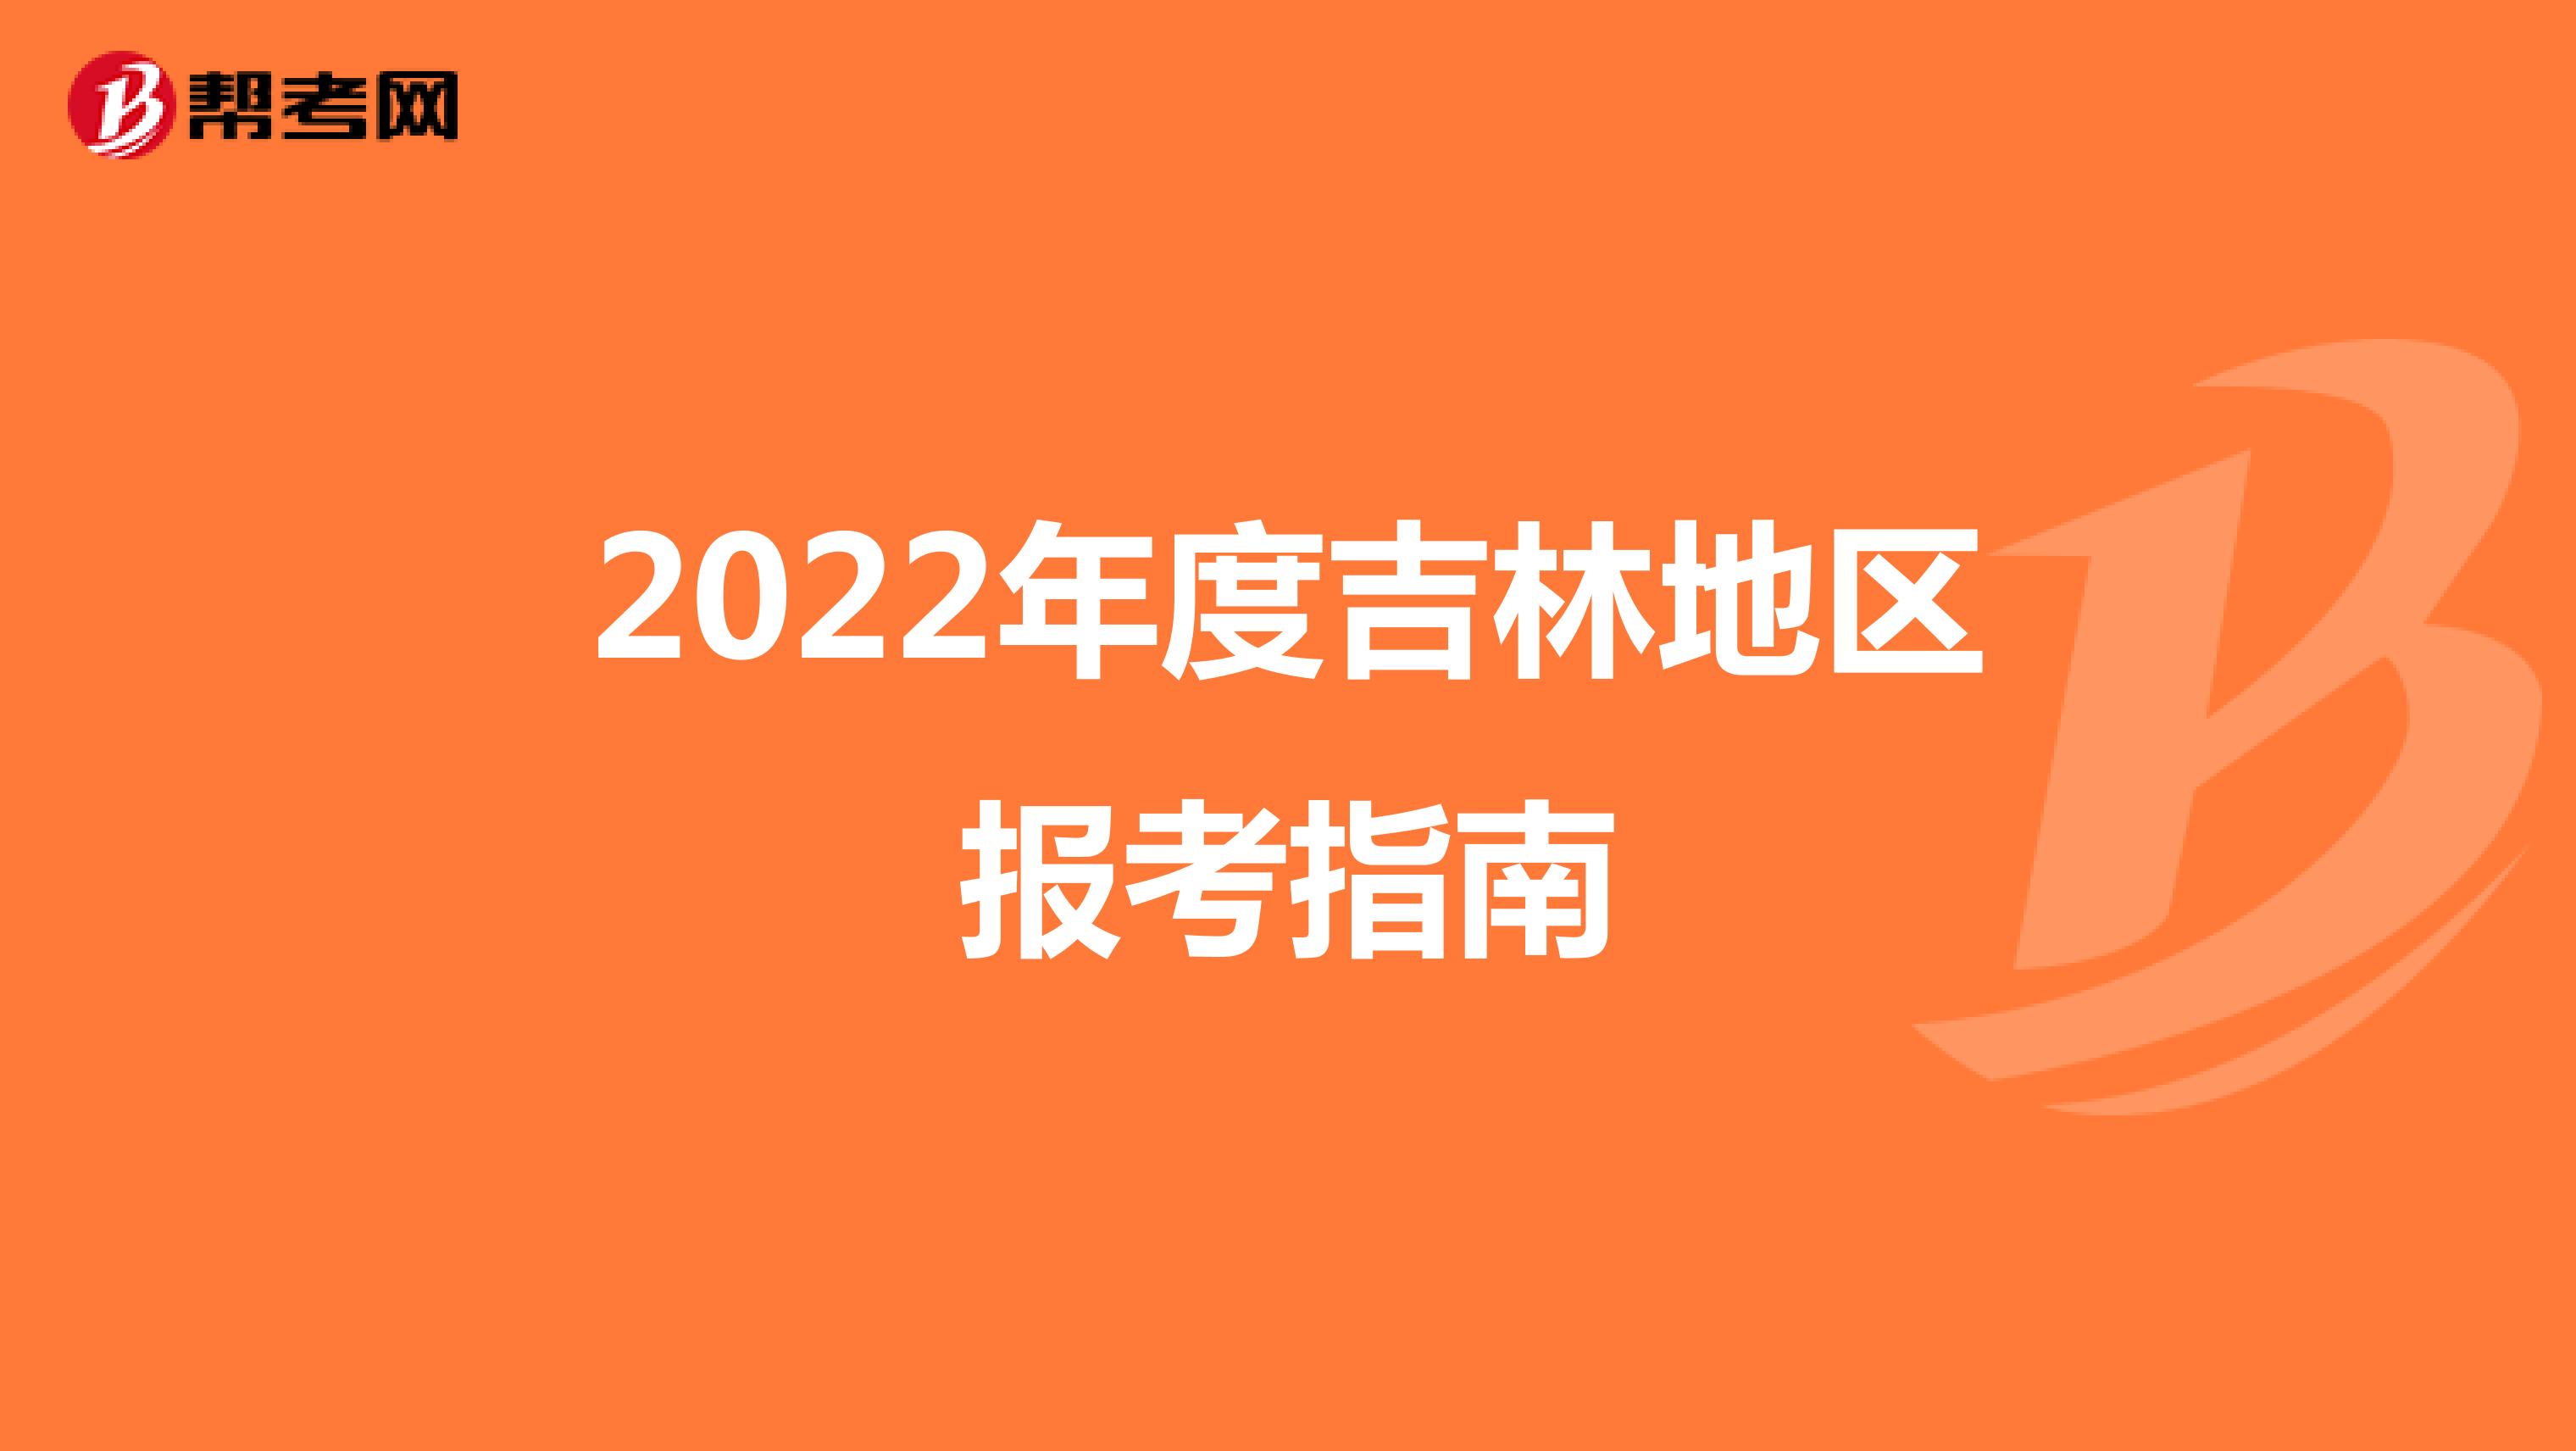 2022年度吉林地区报考指南